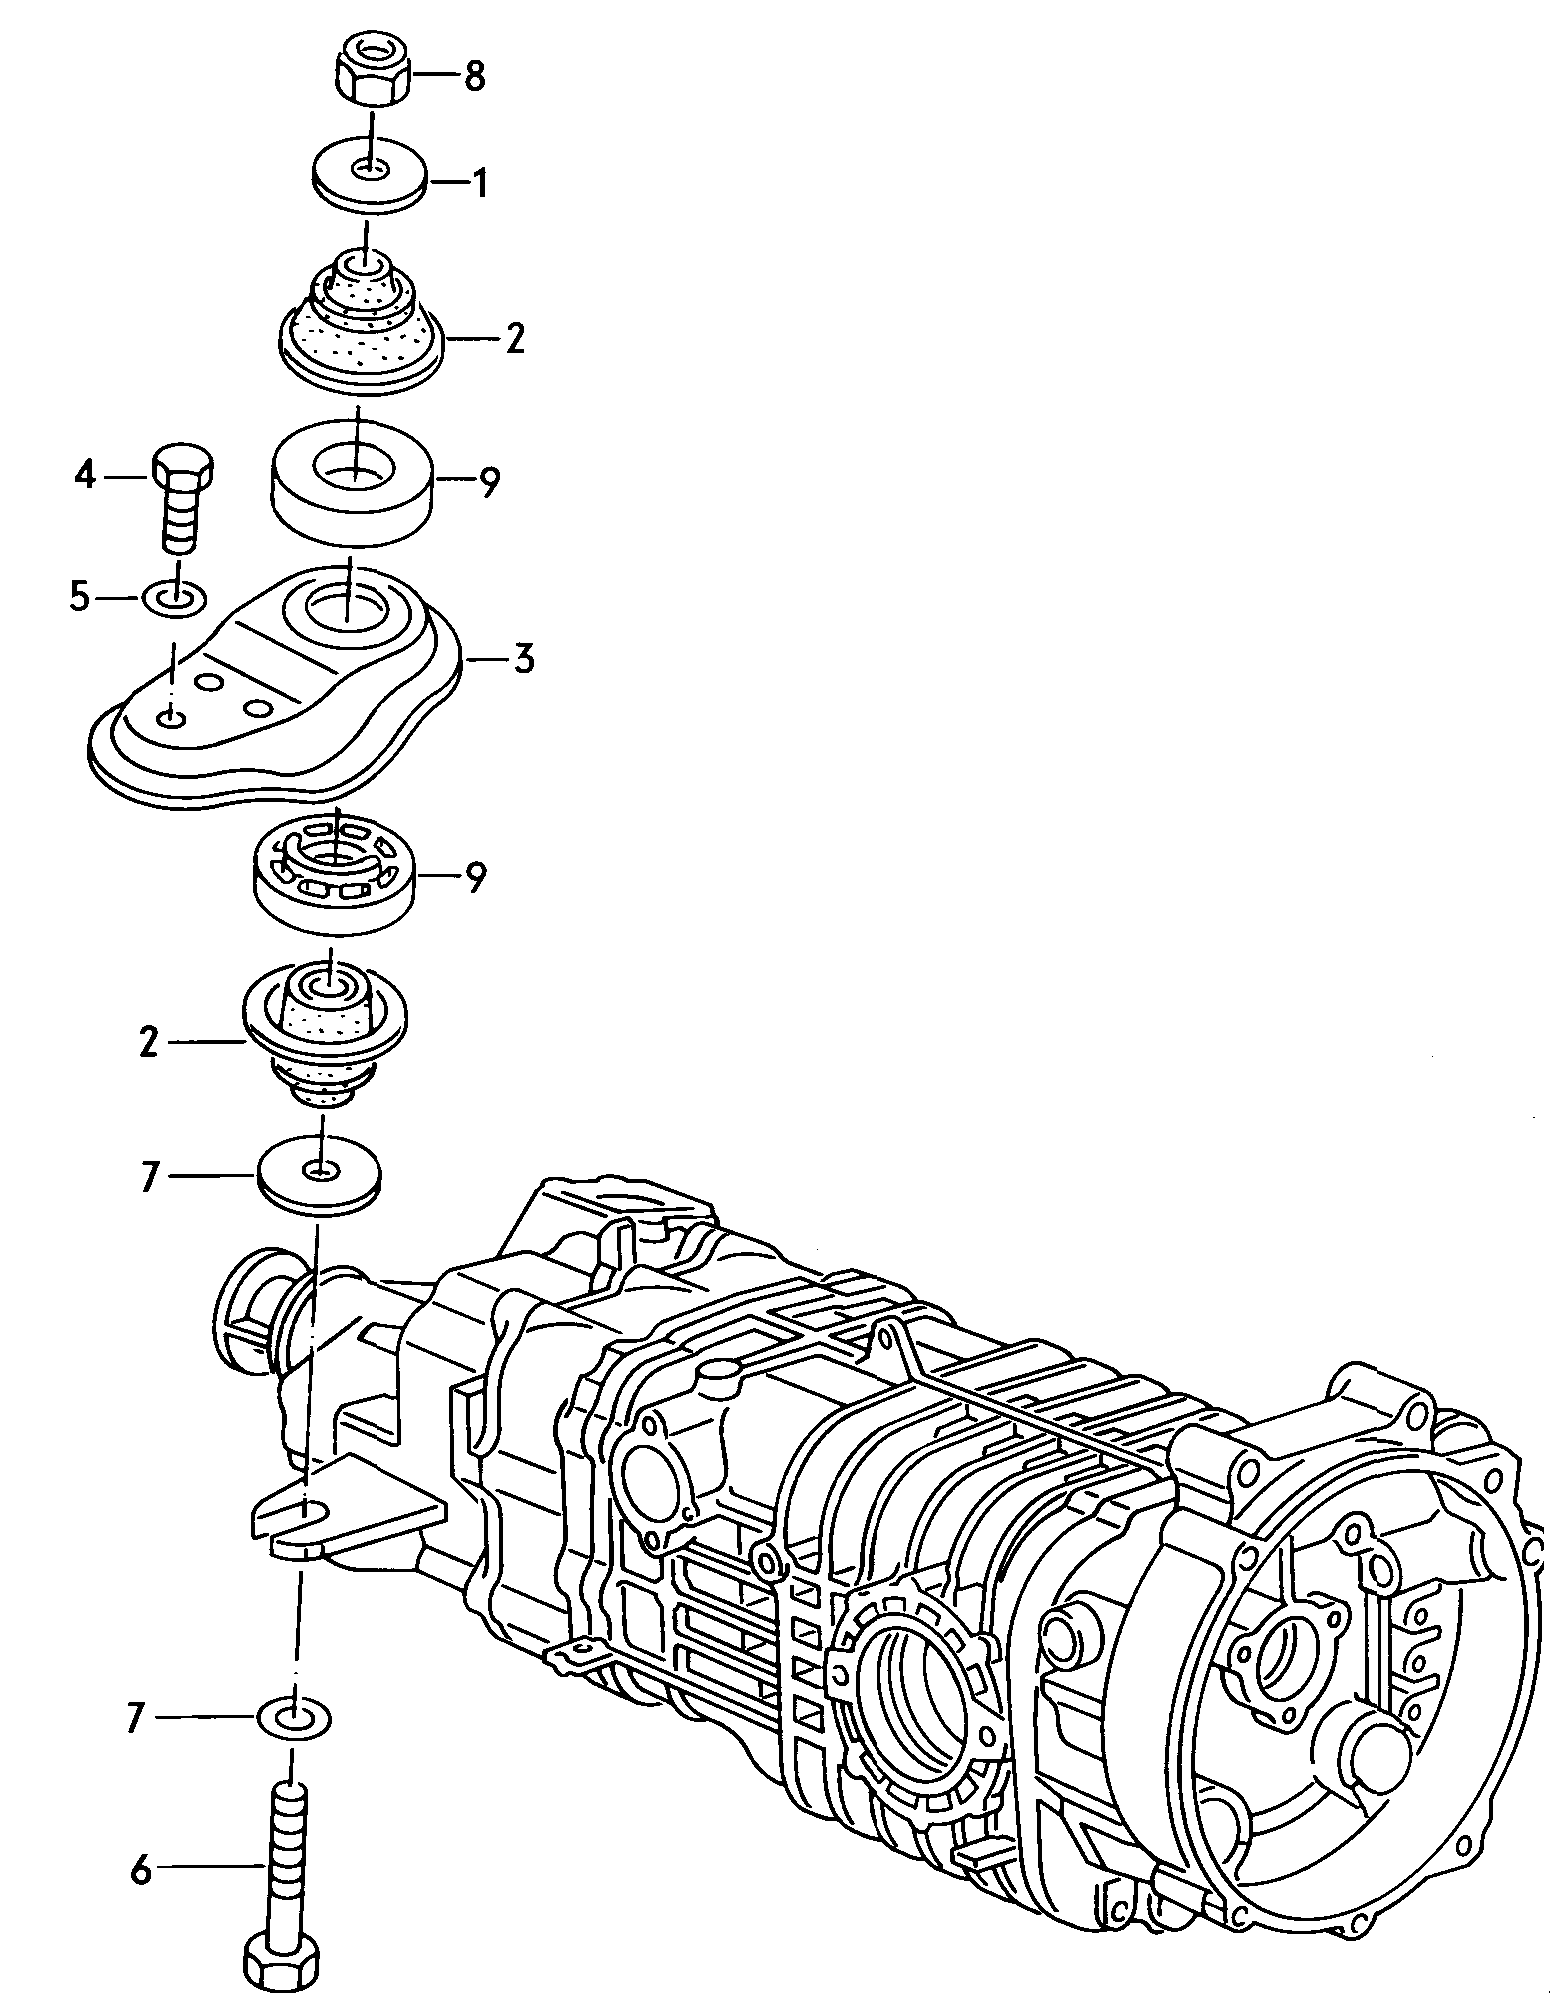 Befestigungsteile f. Getriebe  - Typ 2/syncro - t2